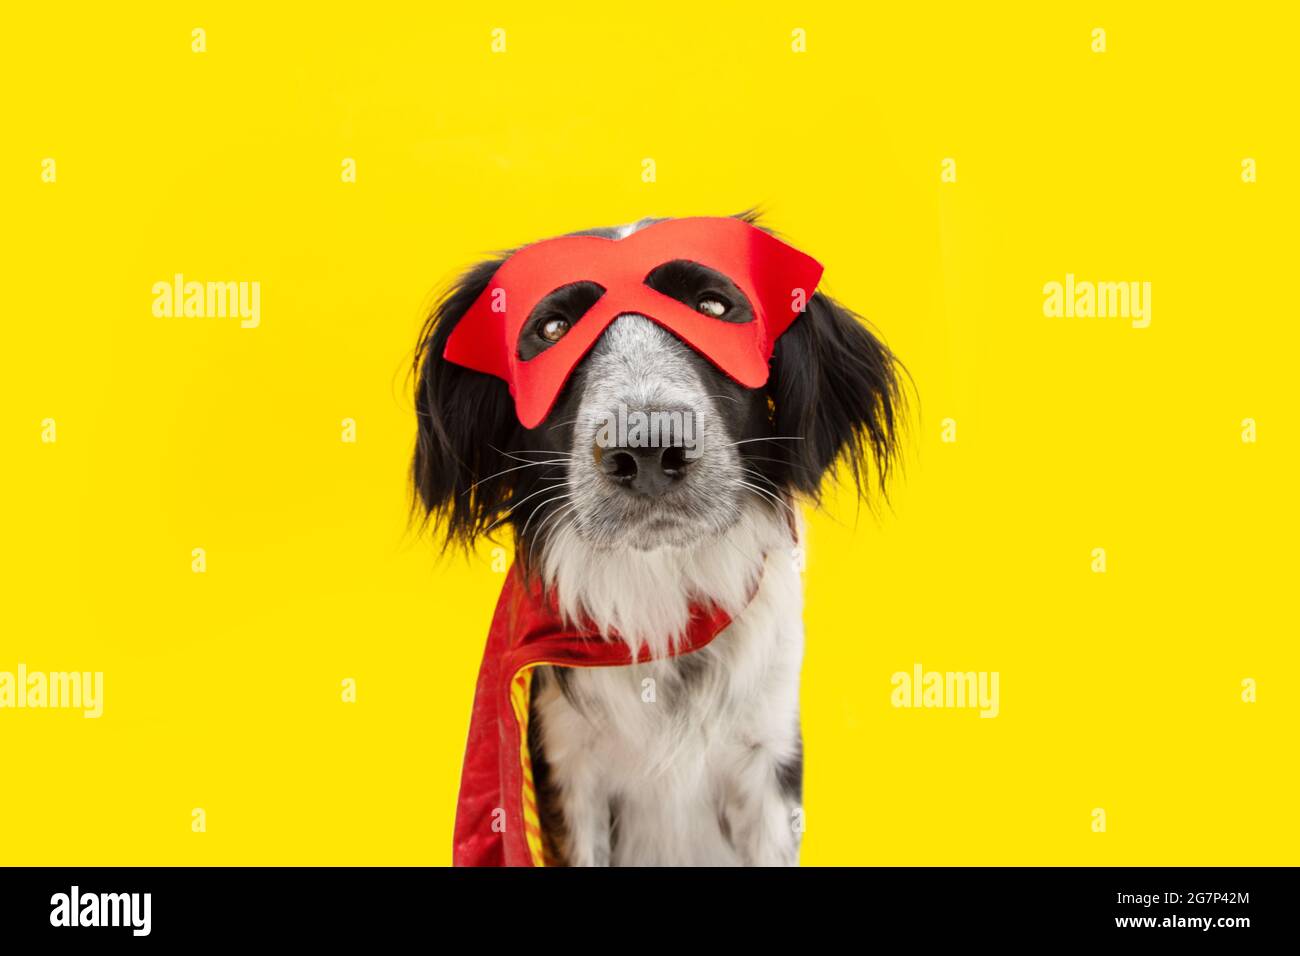 humedad Posada Repeler Perro carnaval o halloween vestido como un héroe con capa roja y máscara.  Aislado sobre fondo amarillo Fotografía de stock - Alamy